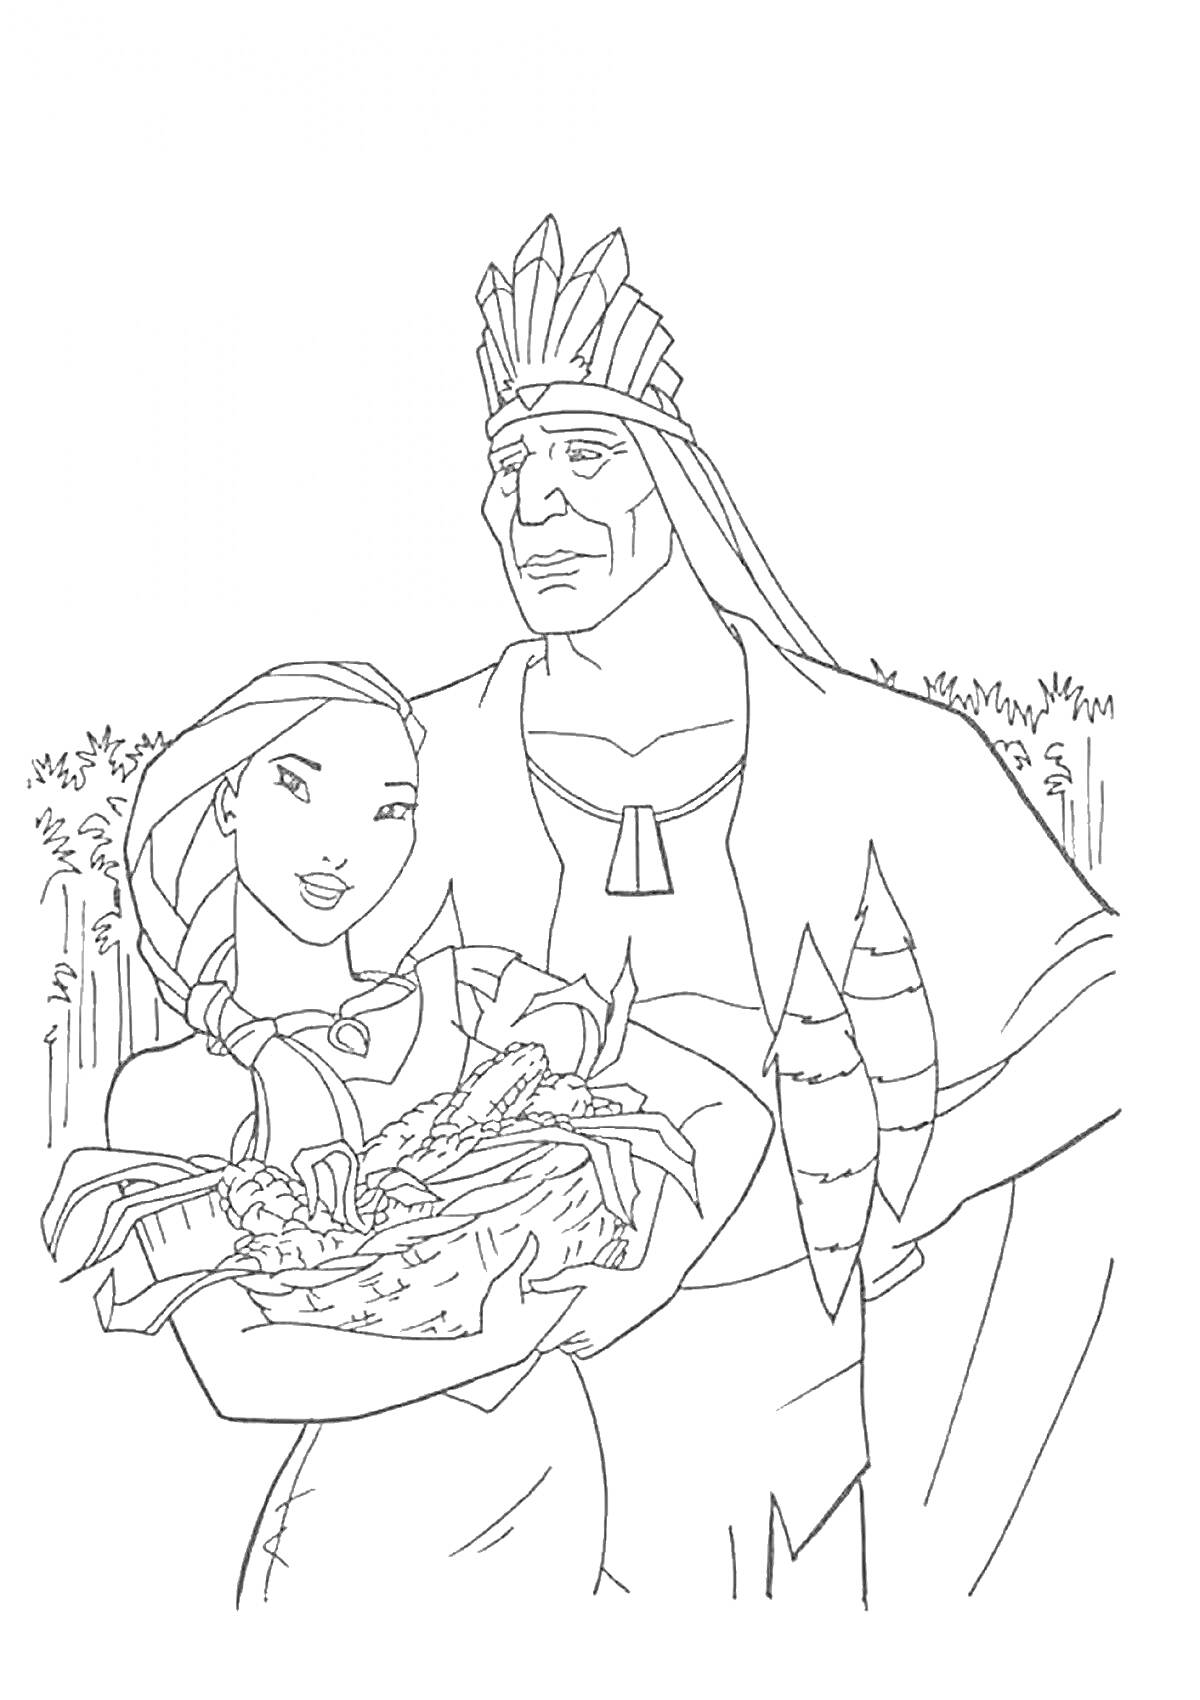 Девушка с длинными волосами в платье держит корзину с овощами, мужчина в головном уборе стоит рядом